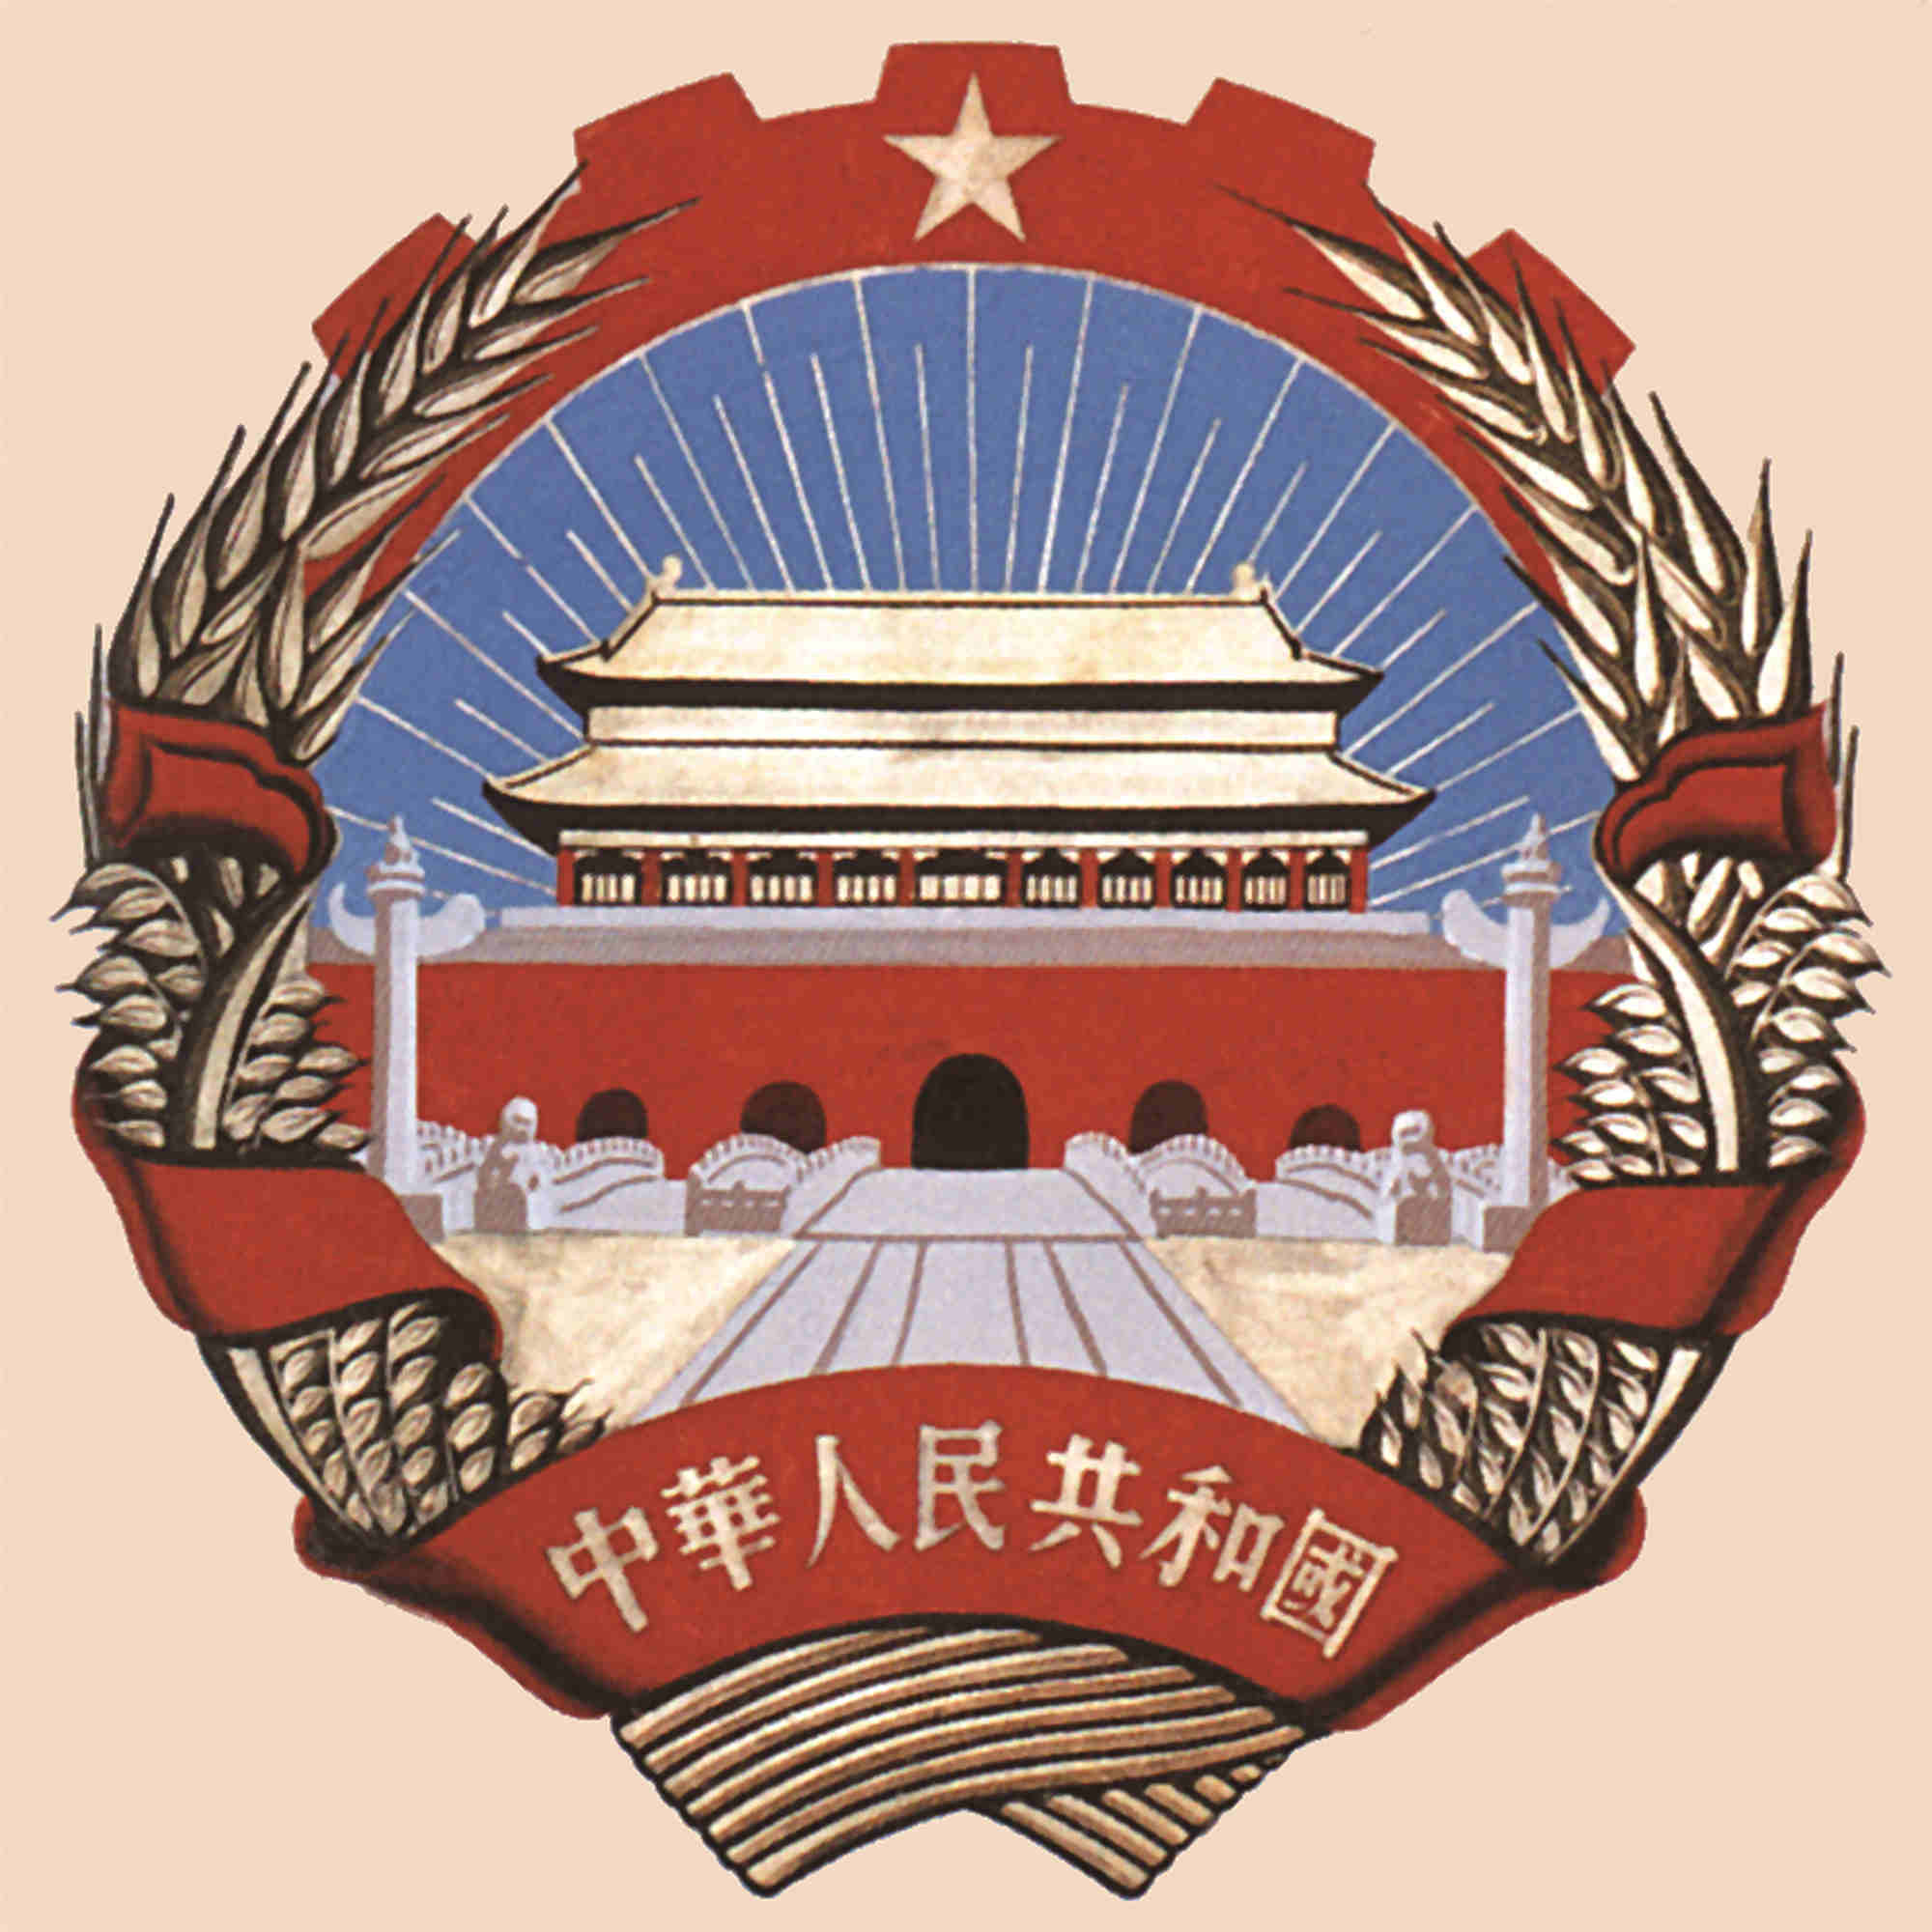 【政协·往事】中华人民共和国国徽是何时确定的?